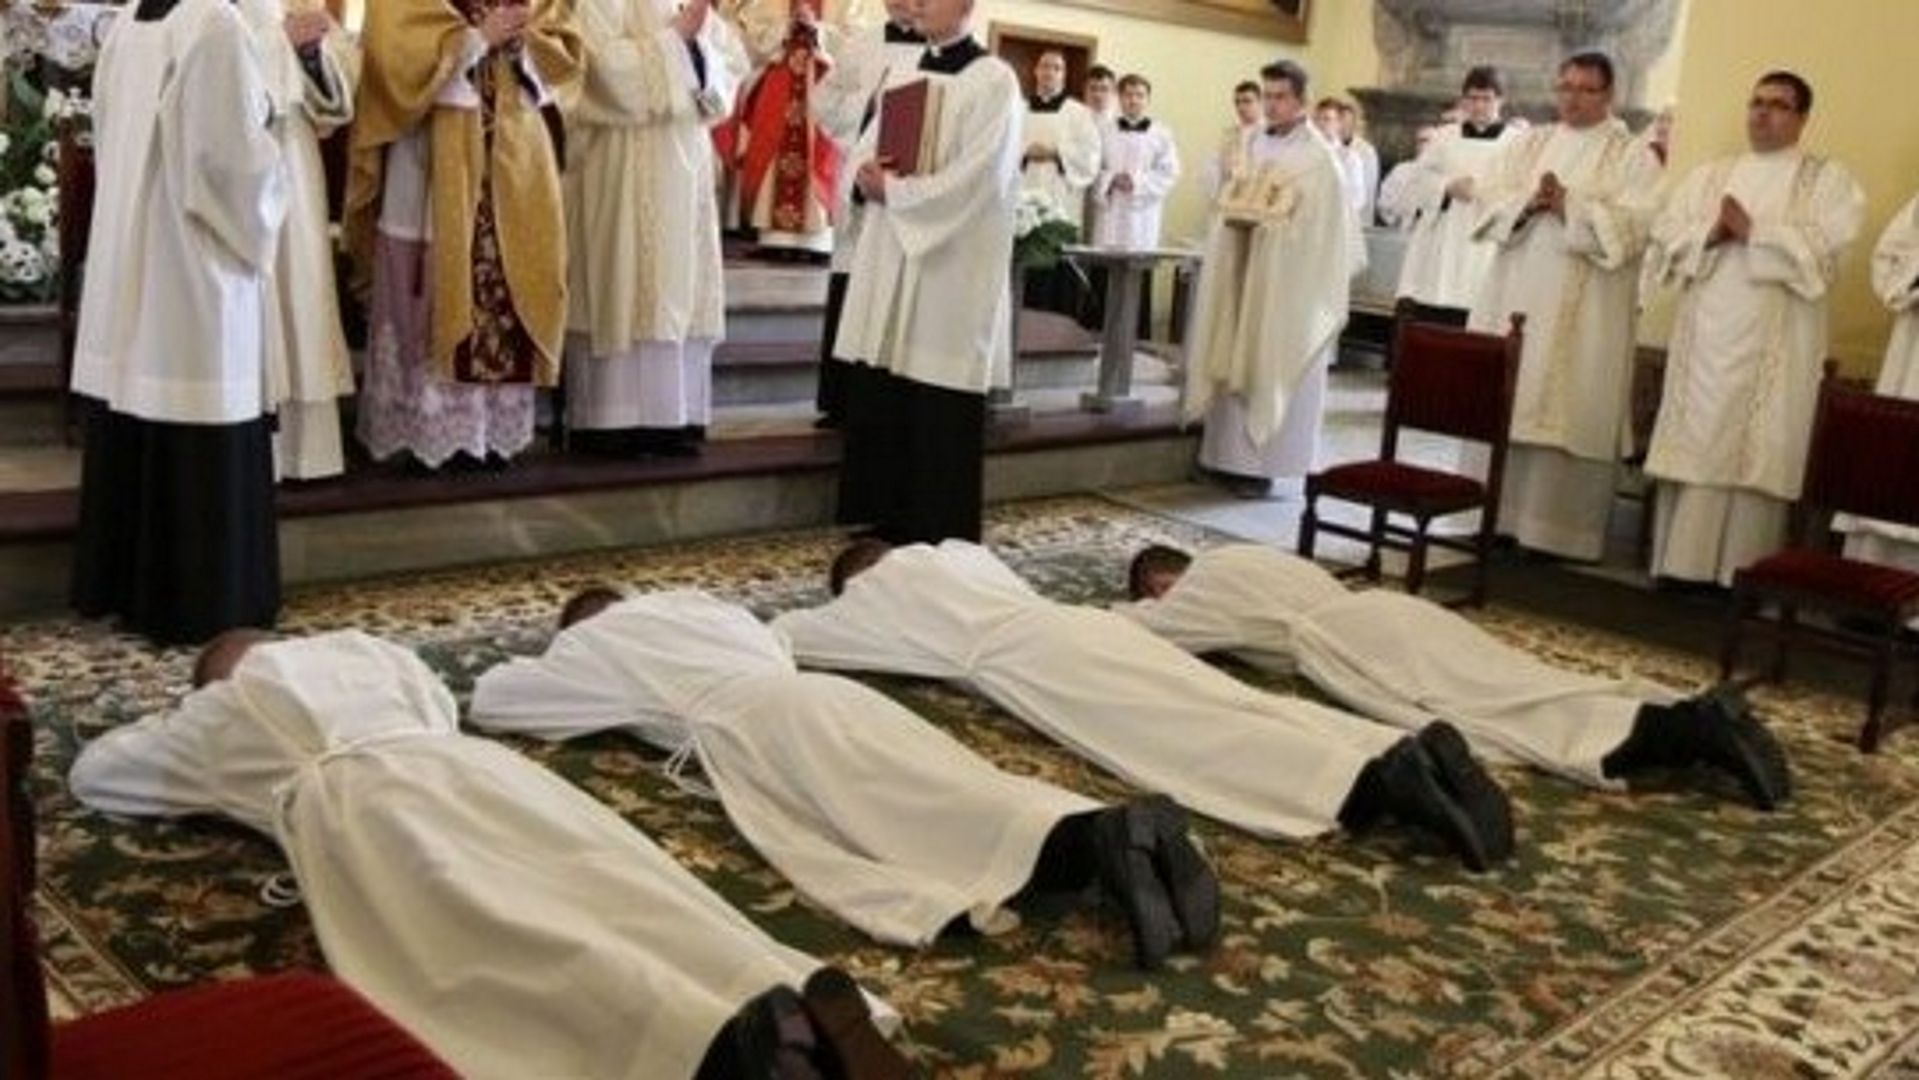 Biskup rozpoczyna rekrutację. Żonaci mężczyźni będą udzielać chrztu